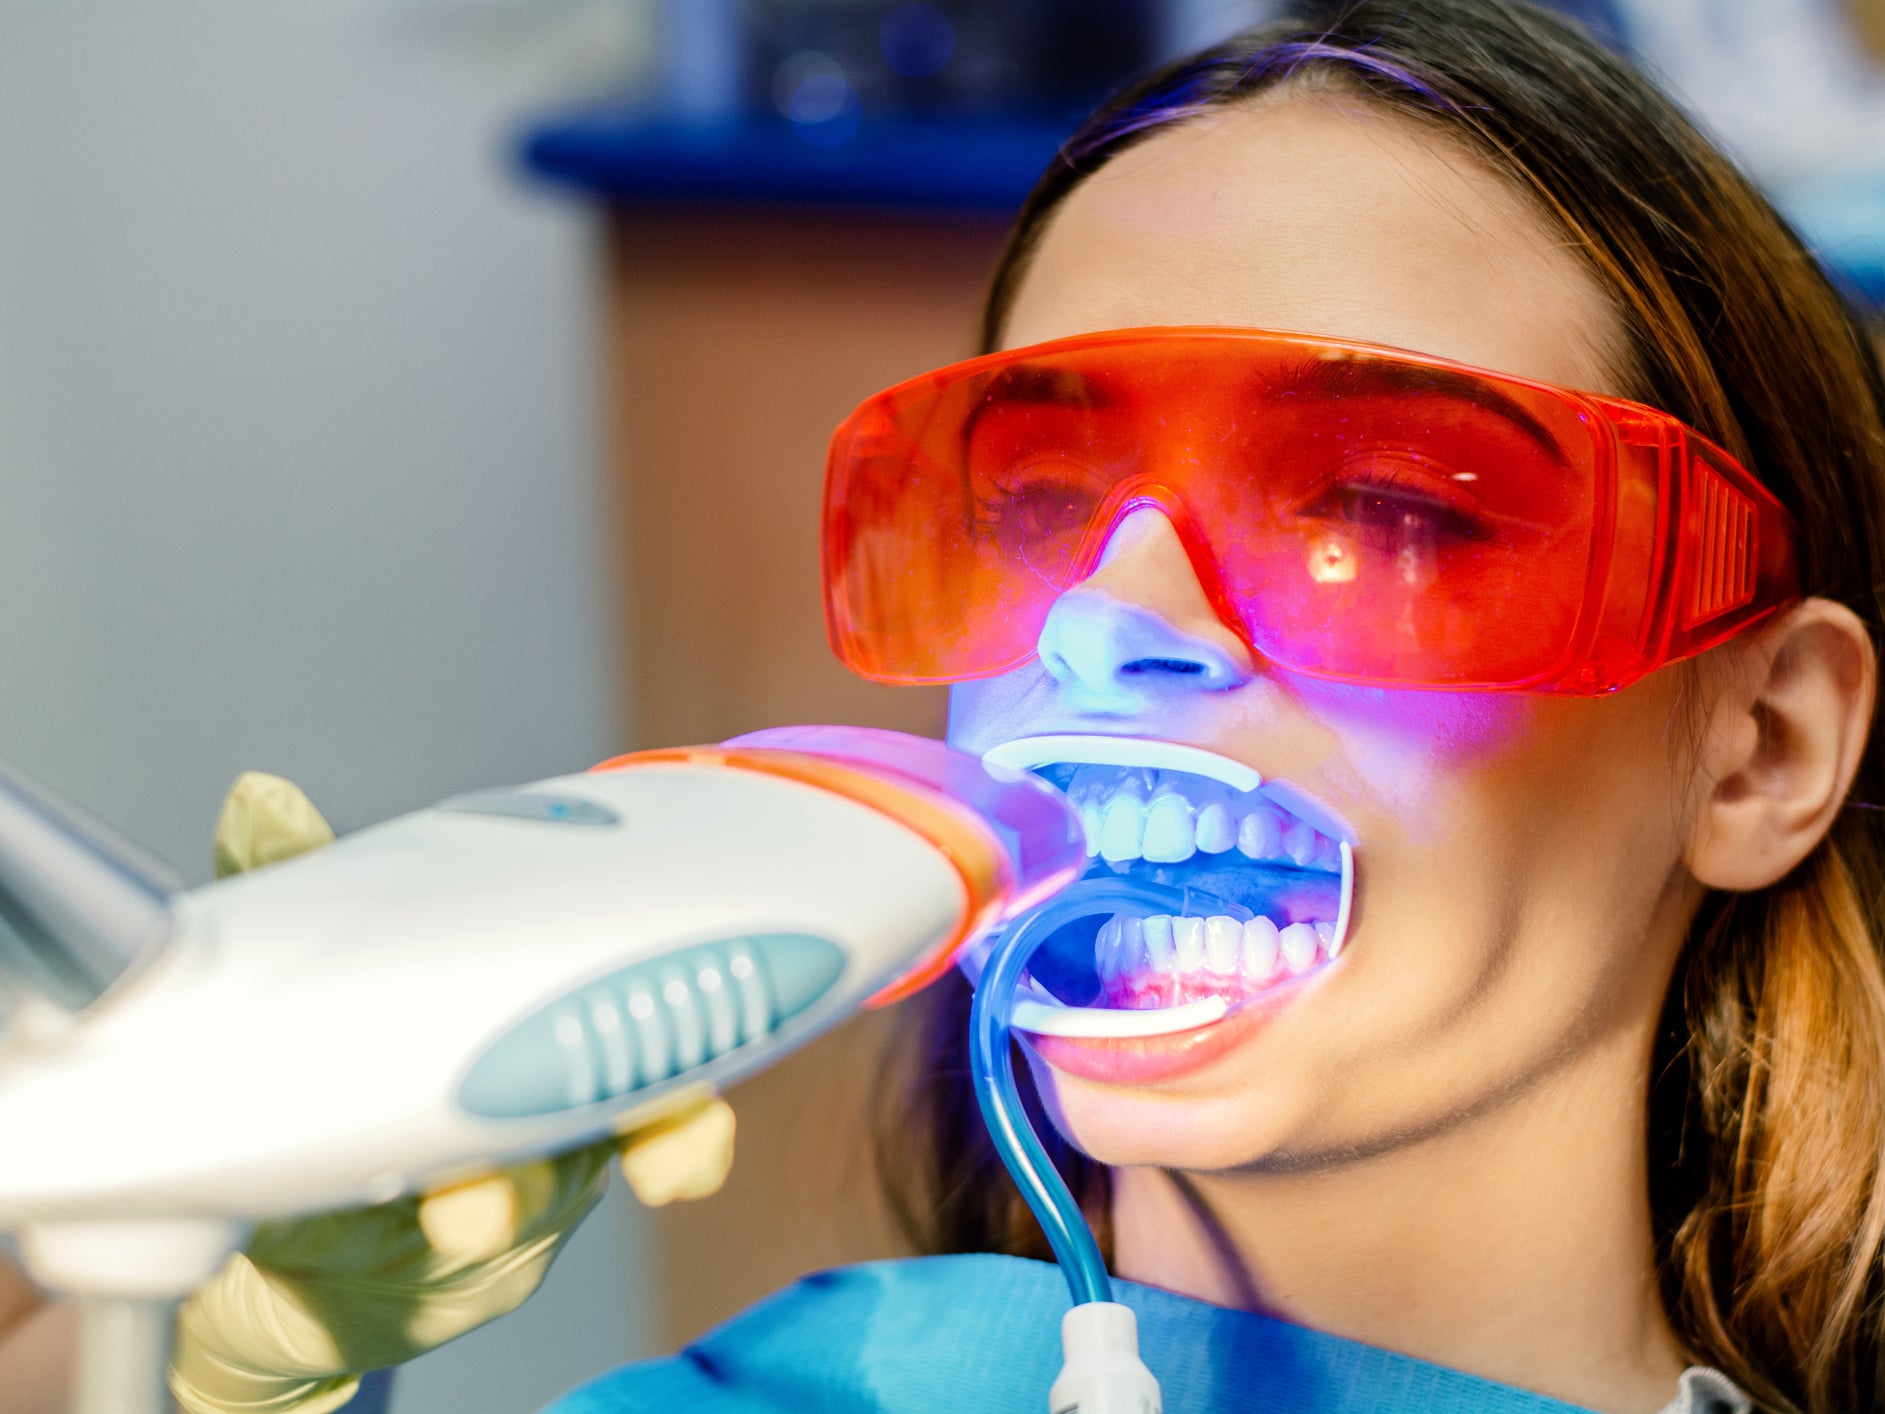 Teeth Whitening Led Light